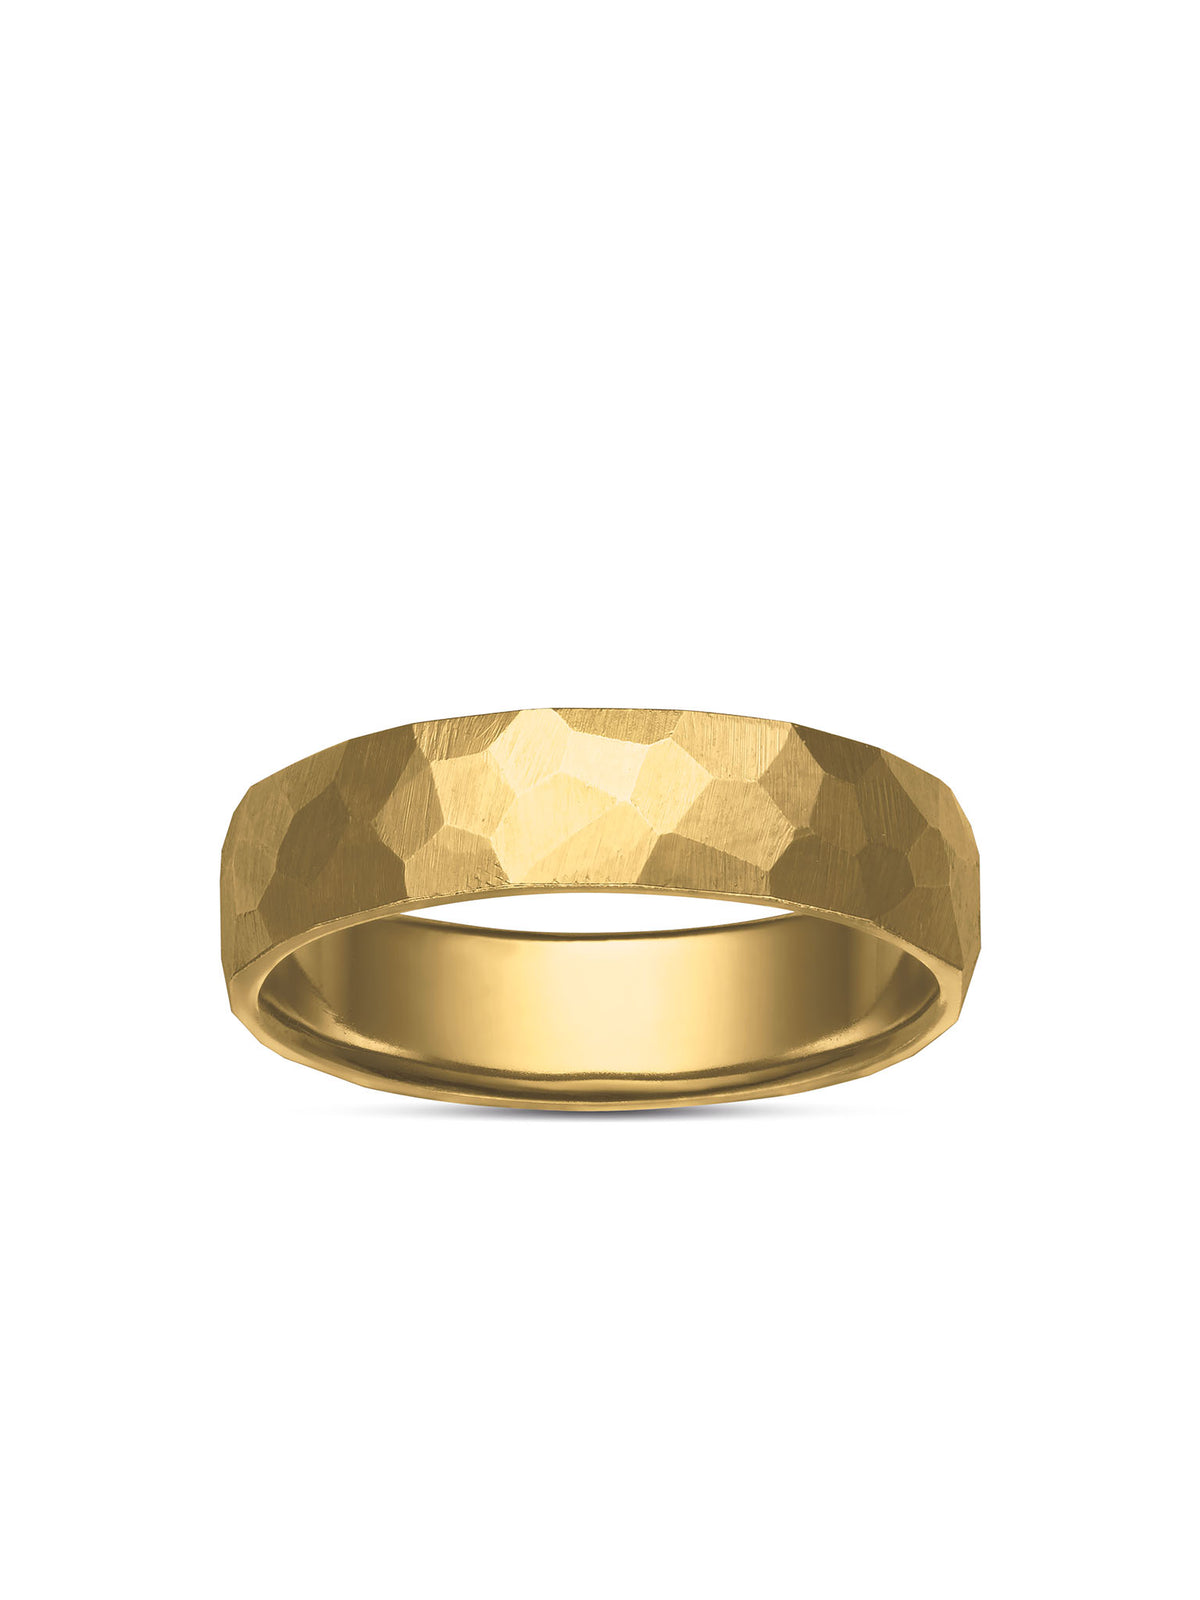 Faceted Jegygyűrű / Arany 